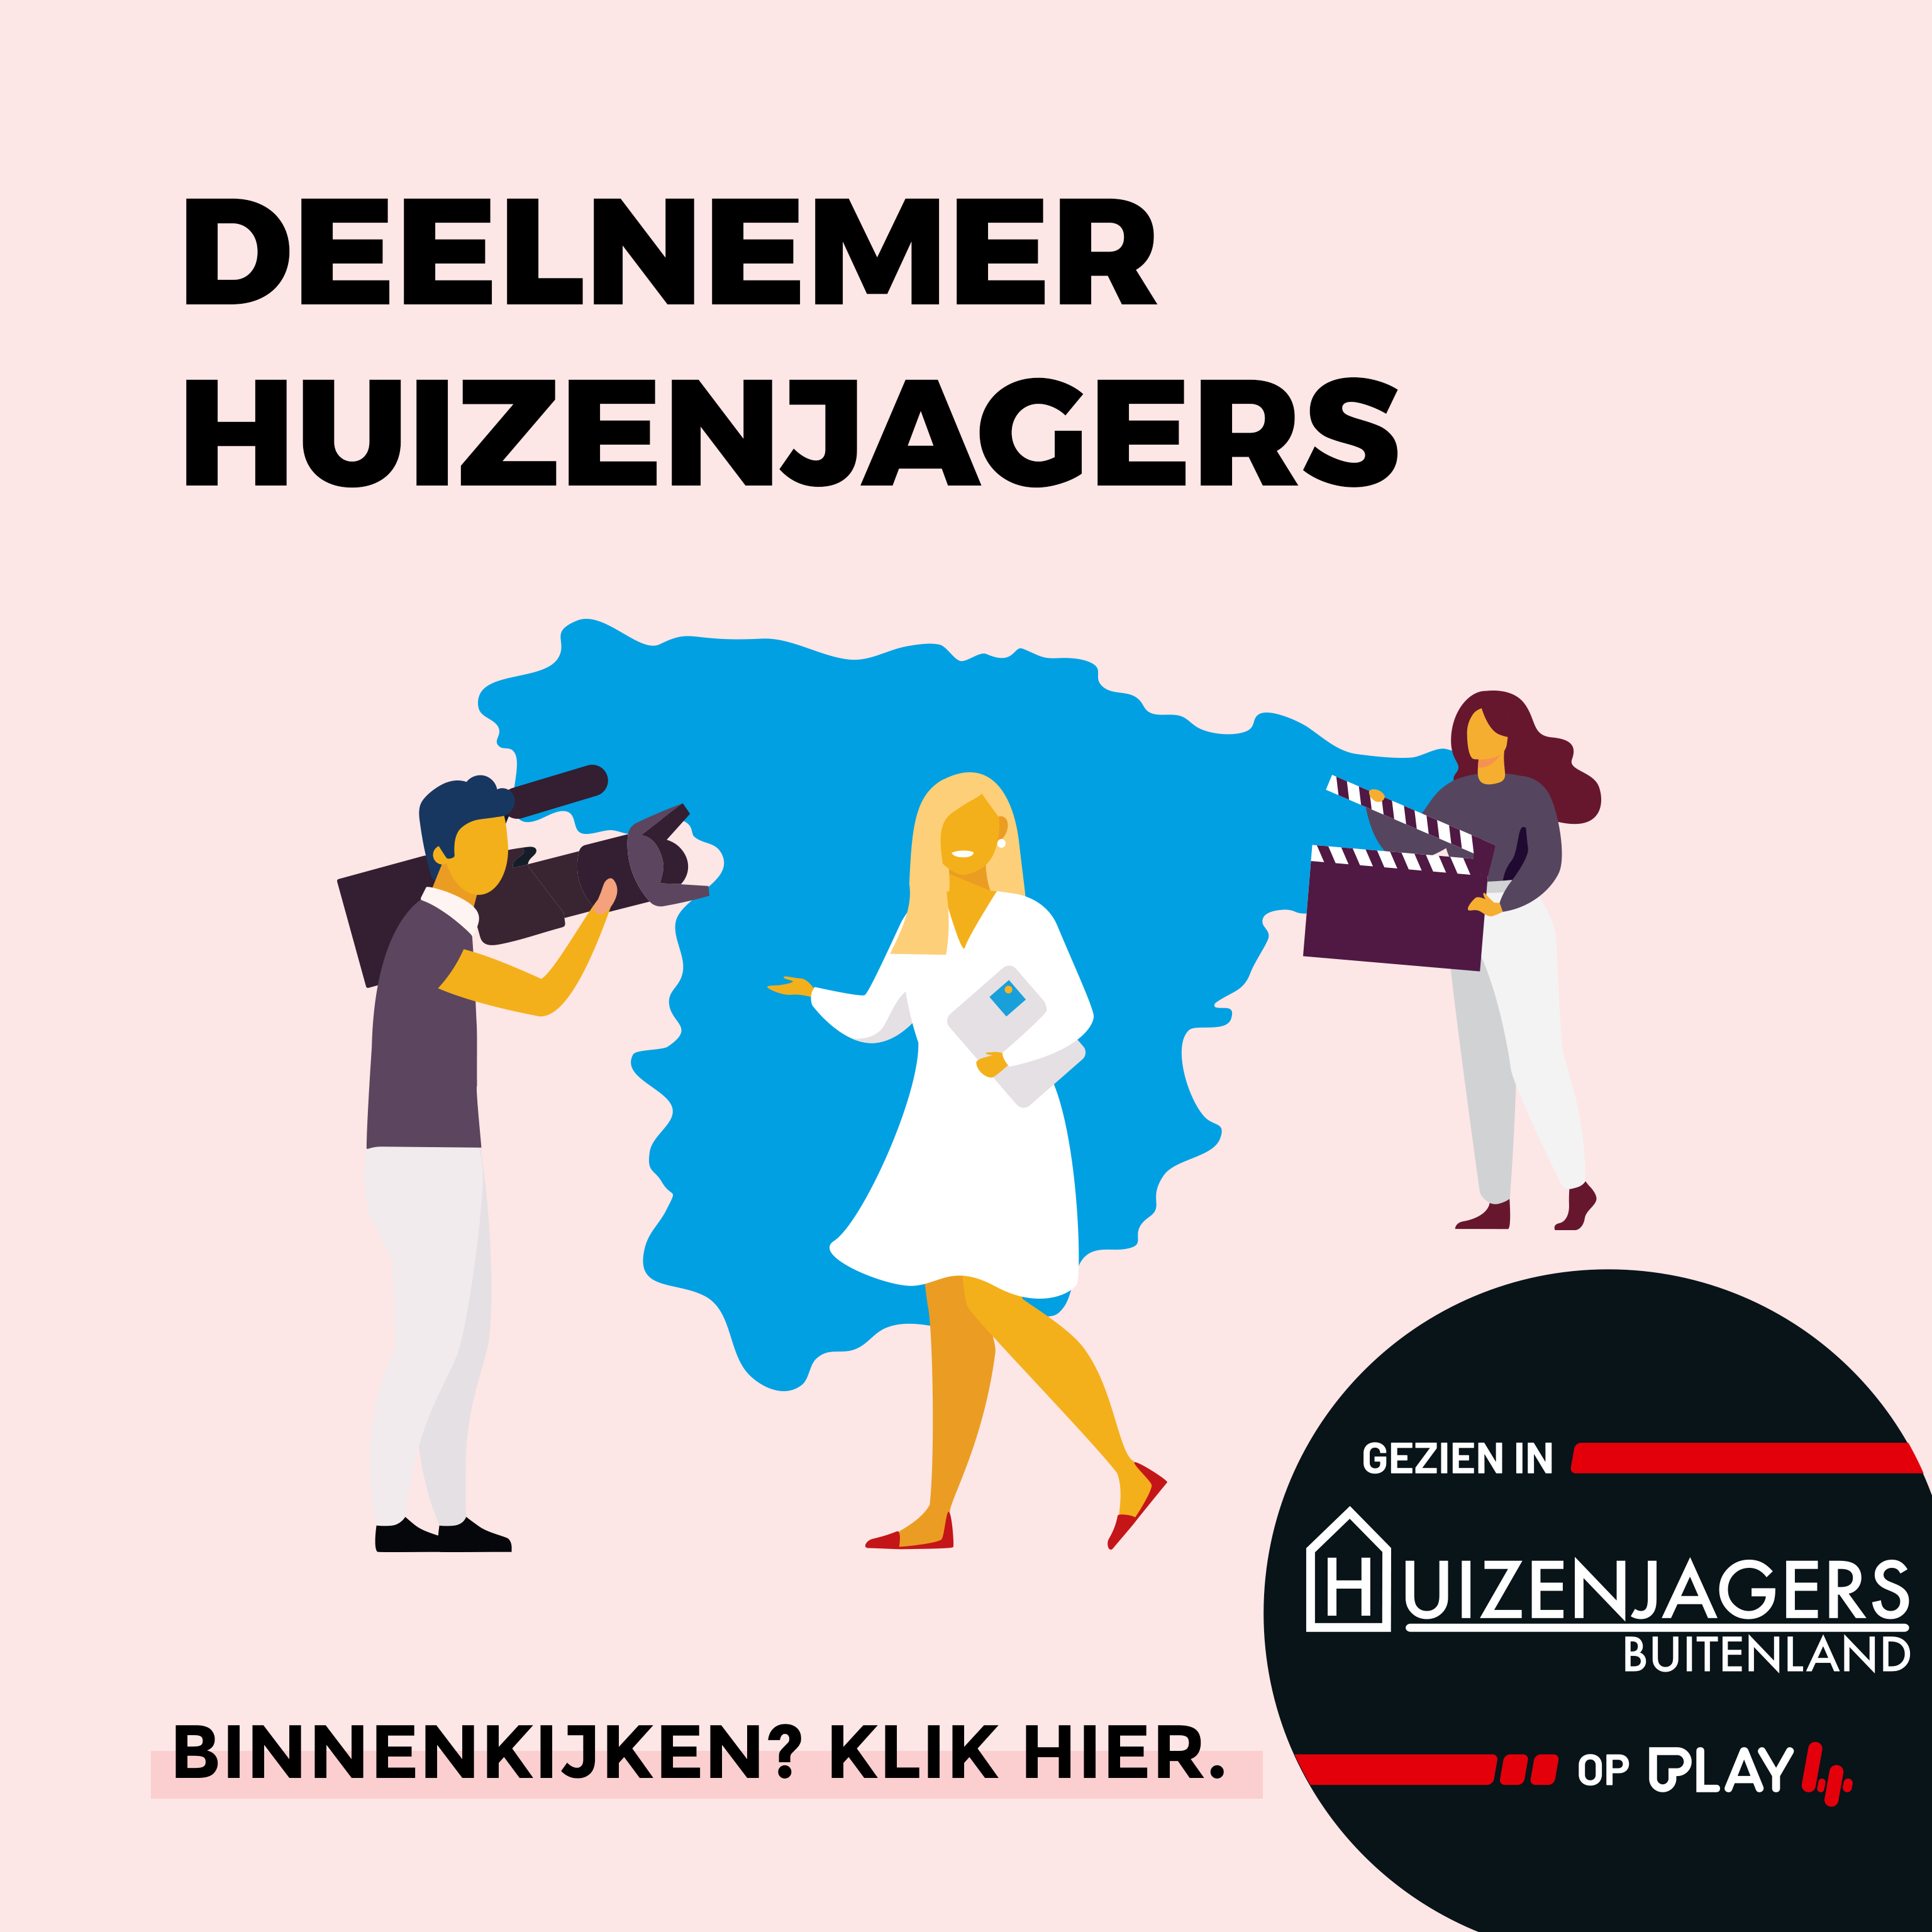 Deelnemer - Play4 - Huizenjagers - Buitenland